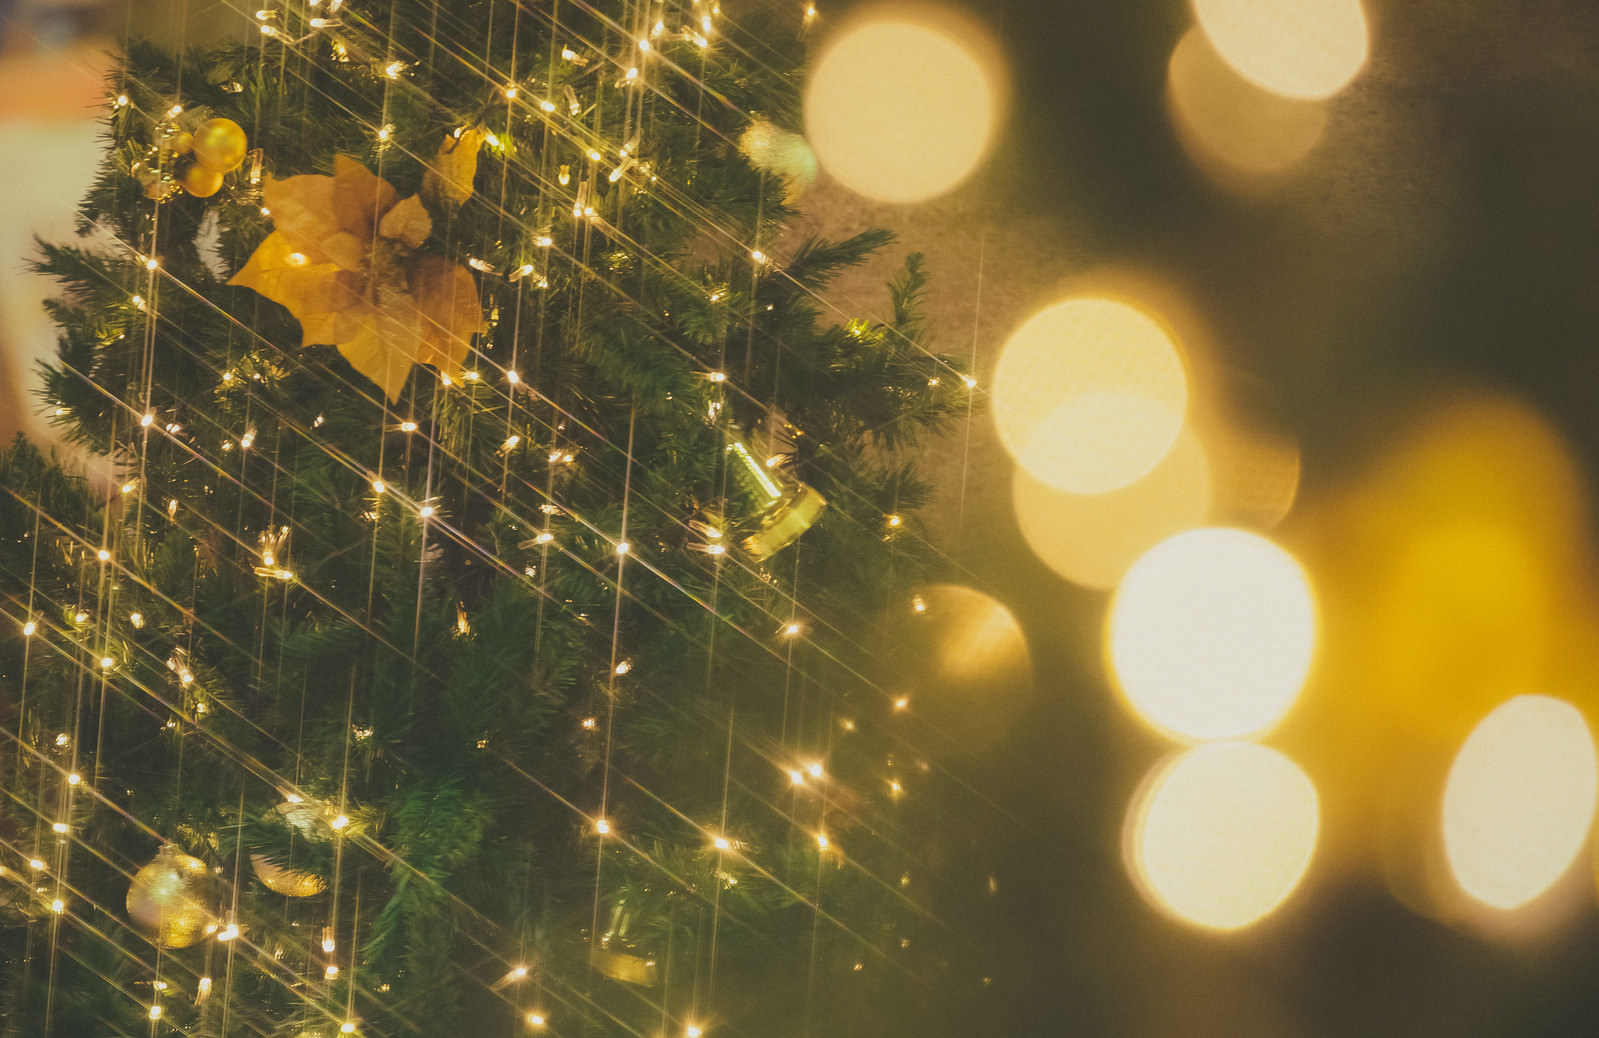 「ライトアップとクリスマスツリー | フリー素材のぱくたそ」の写真